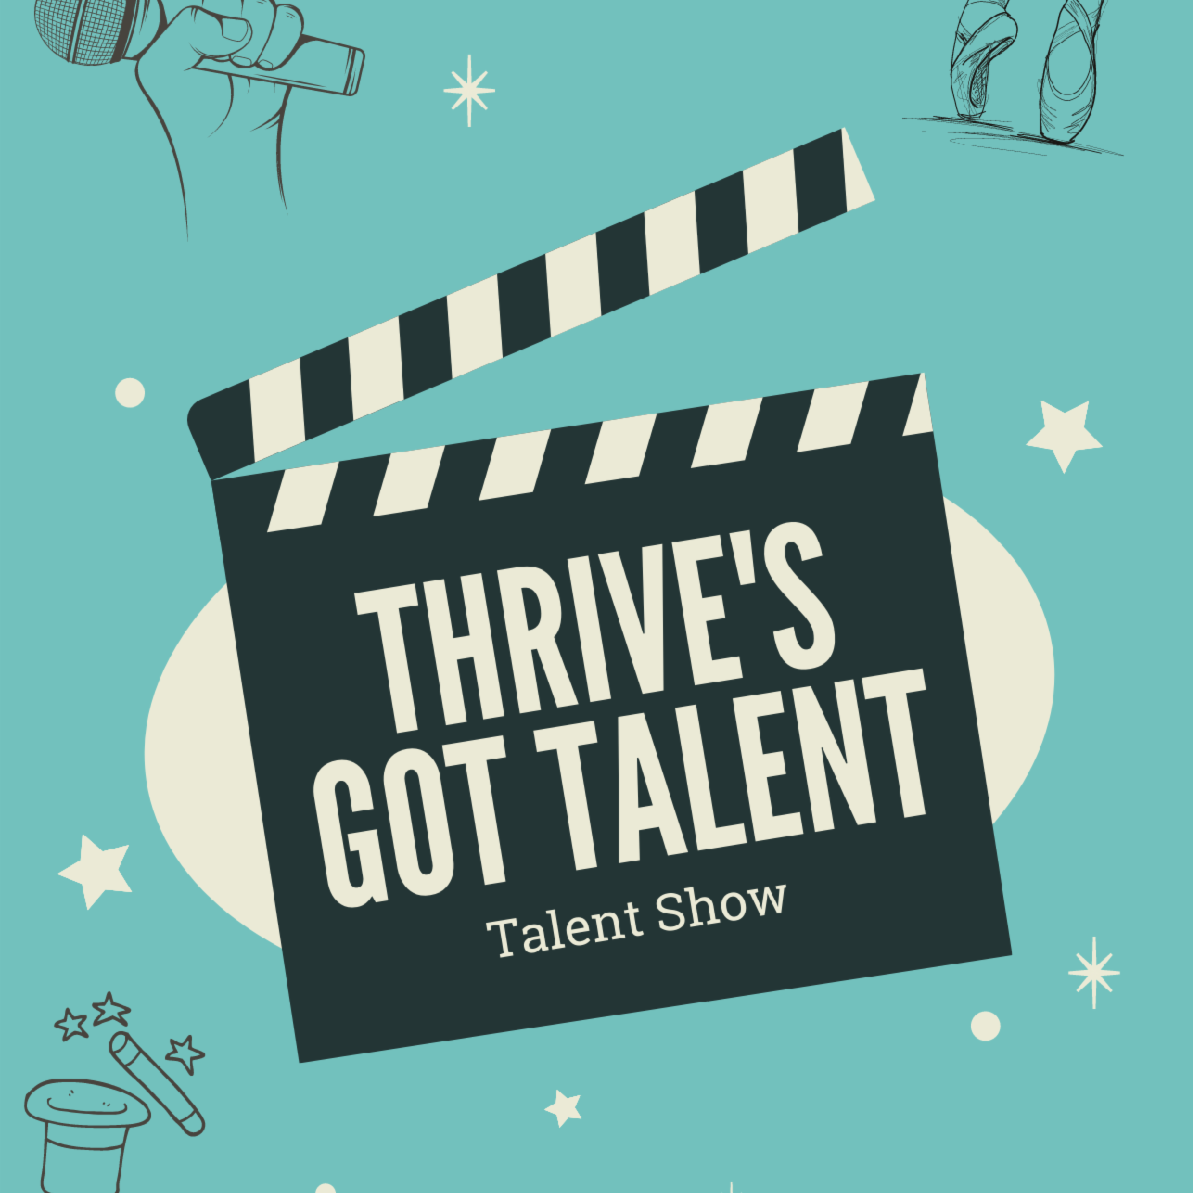 Thrive_s got talent _1_